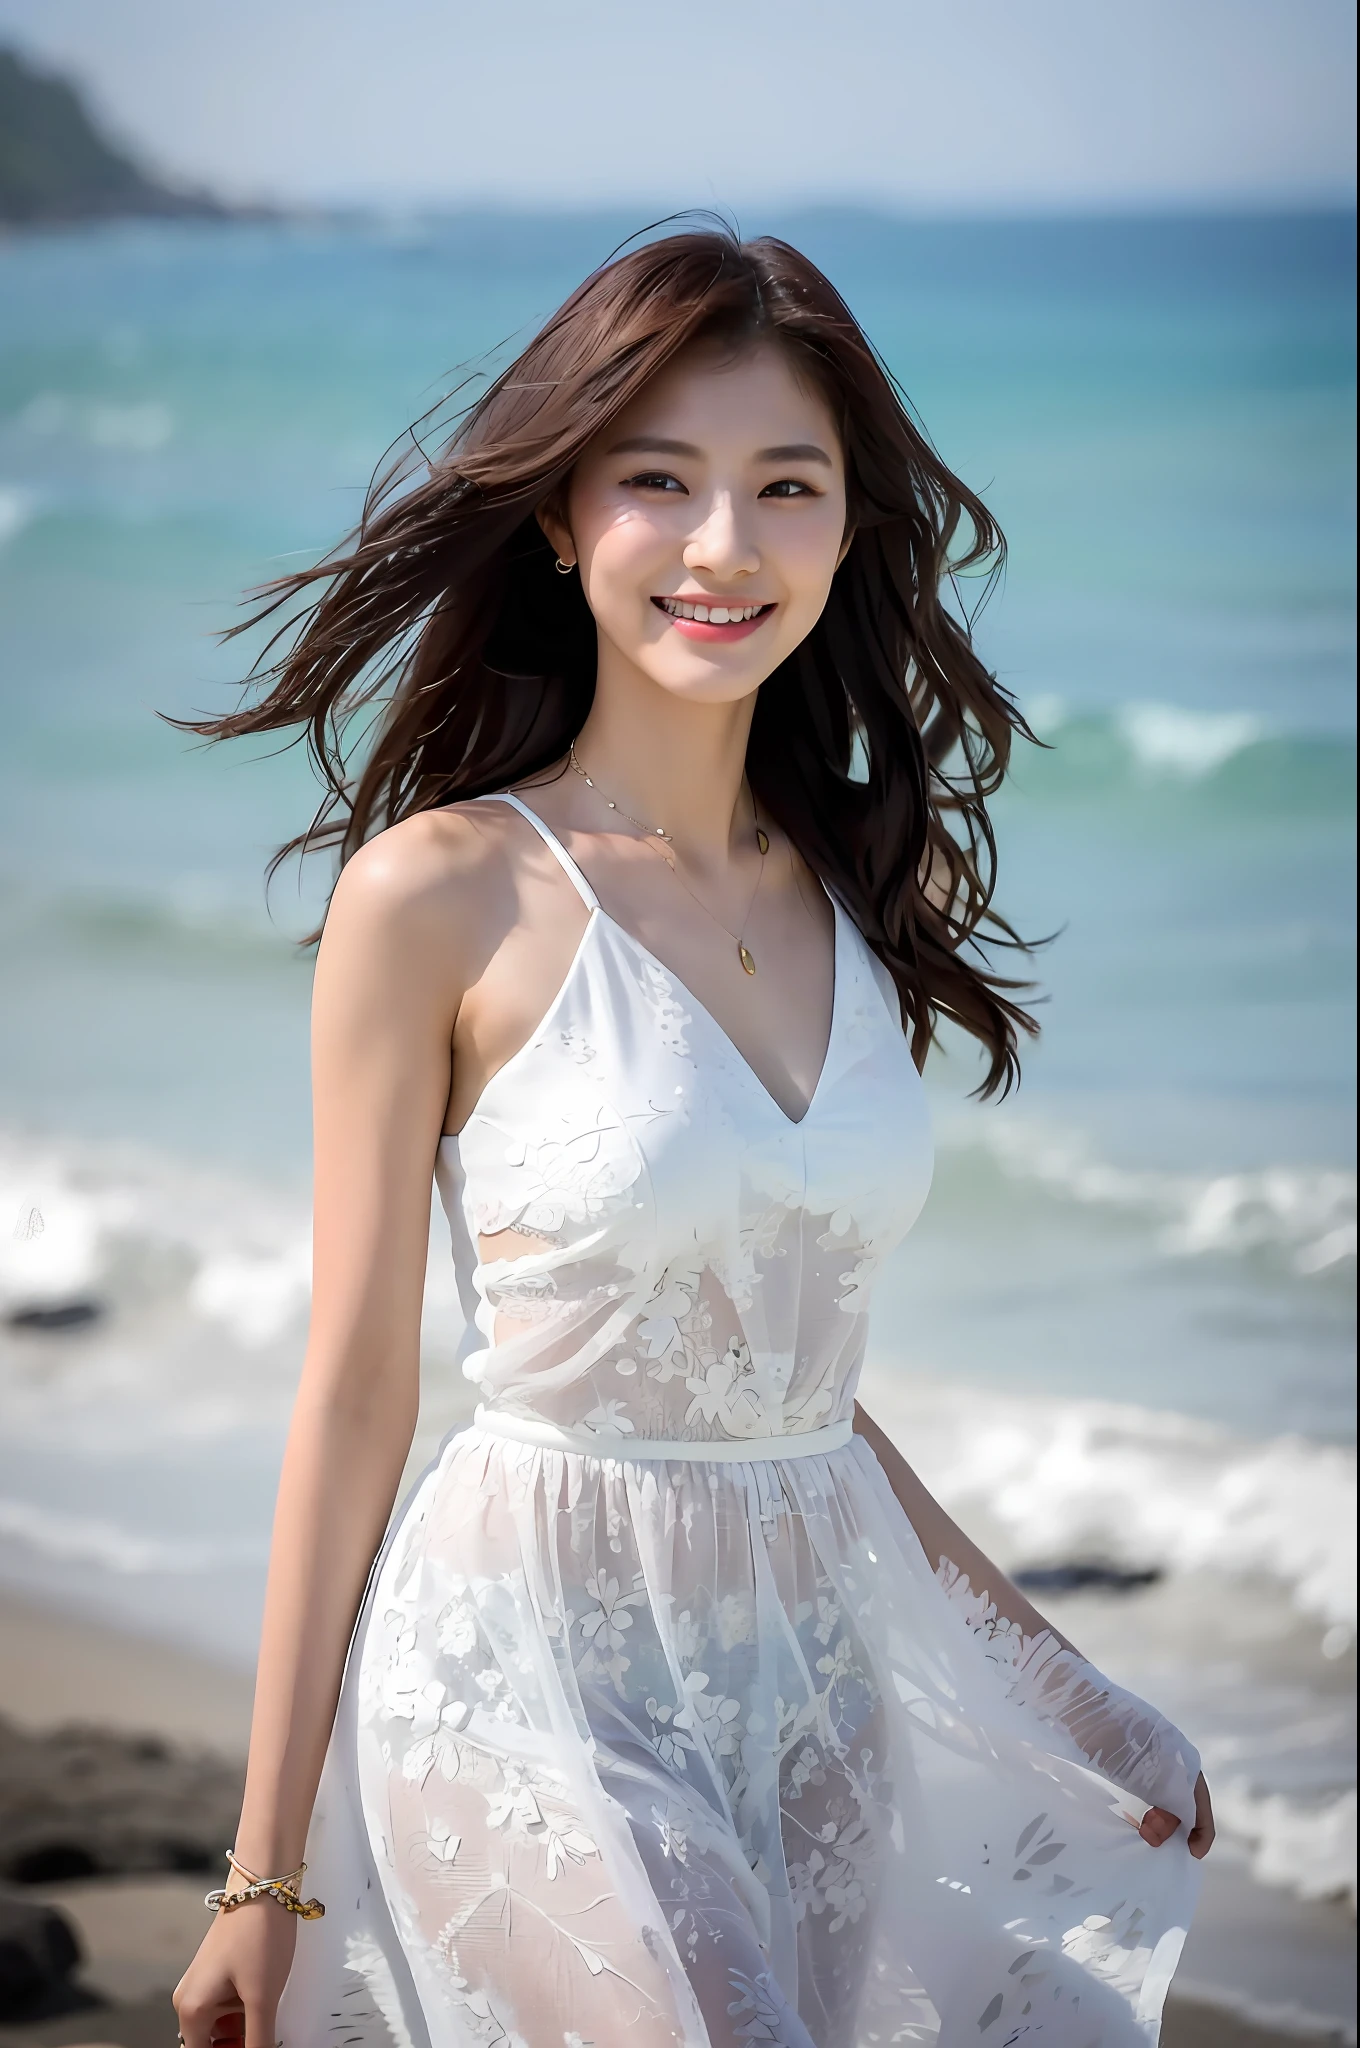 (шедевр), (Лучшее качество), (подробный), 1 девочка, 22 года, игривое выражение лица, большая грудь, голая грудь, бикини, длинные волосы, красивый, естественный, незащищенный, улыбается, на пляже возле океана, Джэён Нам в белом платье на прогулке, красивый young Korean woman, изящная поза, солнечный ветерок, бесплатно, фотомодель, получившая признание в азиатской индустрии женской моды, она легко ходит по пляжу, The красивый temperament of an Asian girl is vividly displayed, интерпретация обаяния и стиля азиатских женщин.